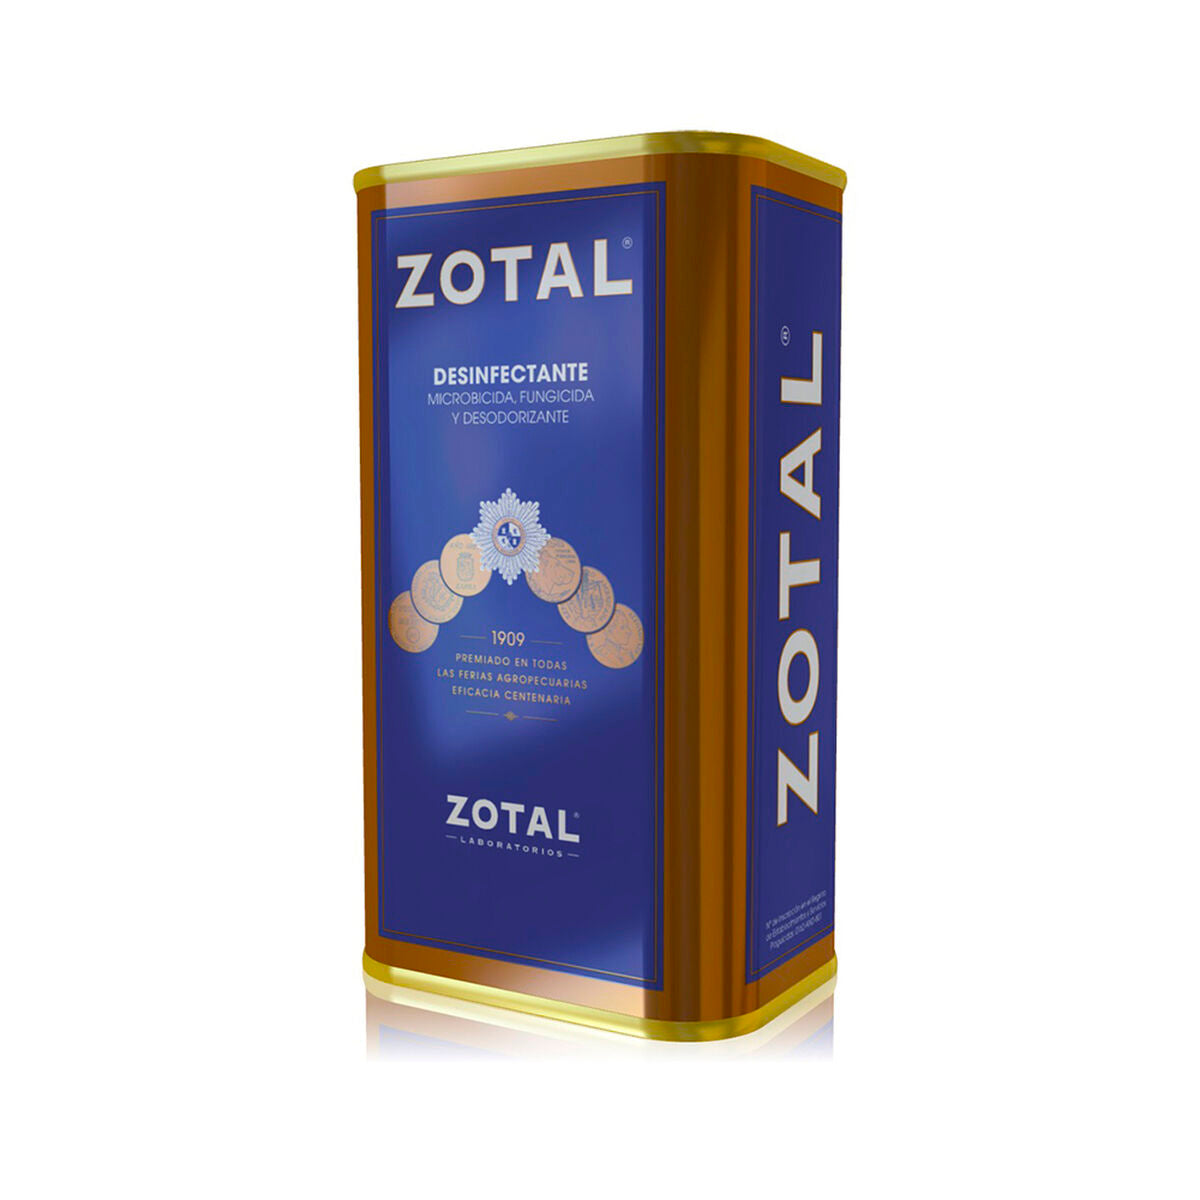 Dezinfekcijsko dezodorans zotalnog fungicida (415 ml)